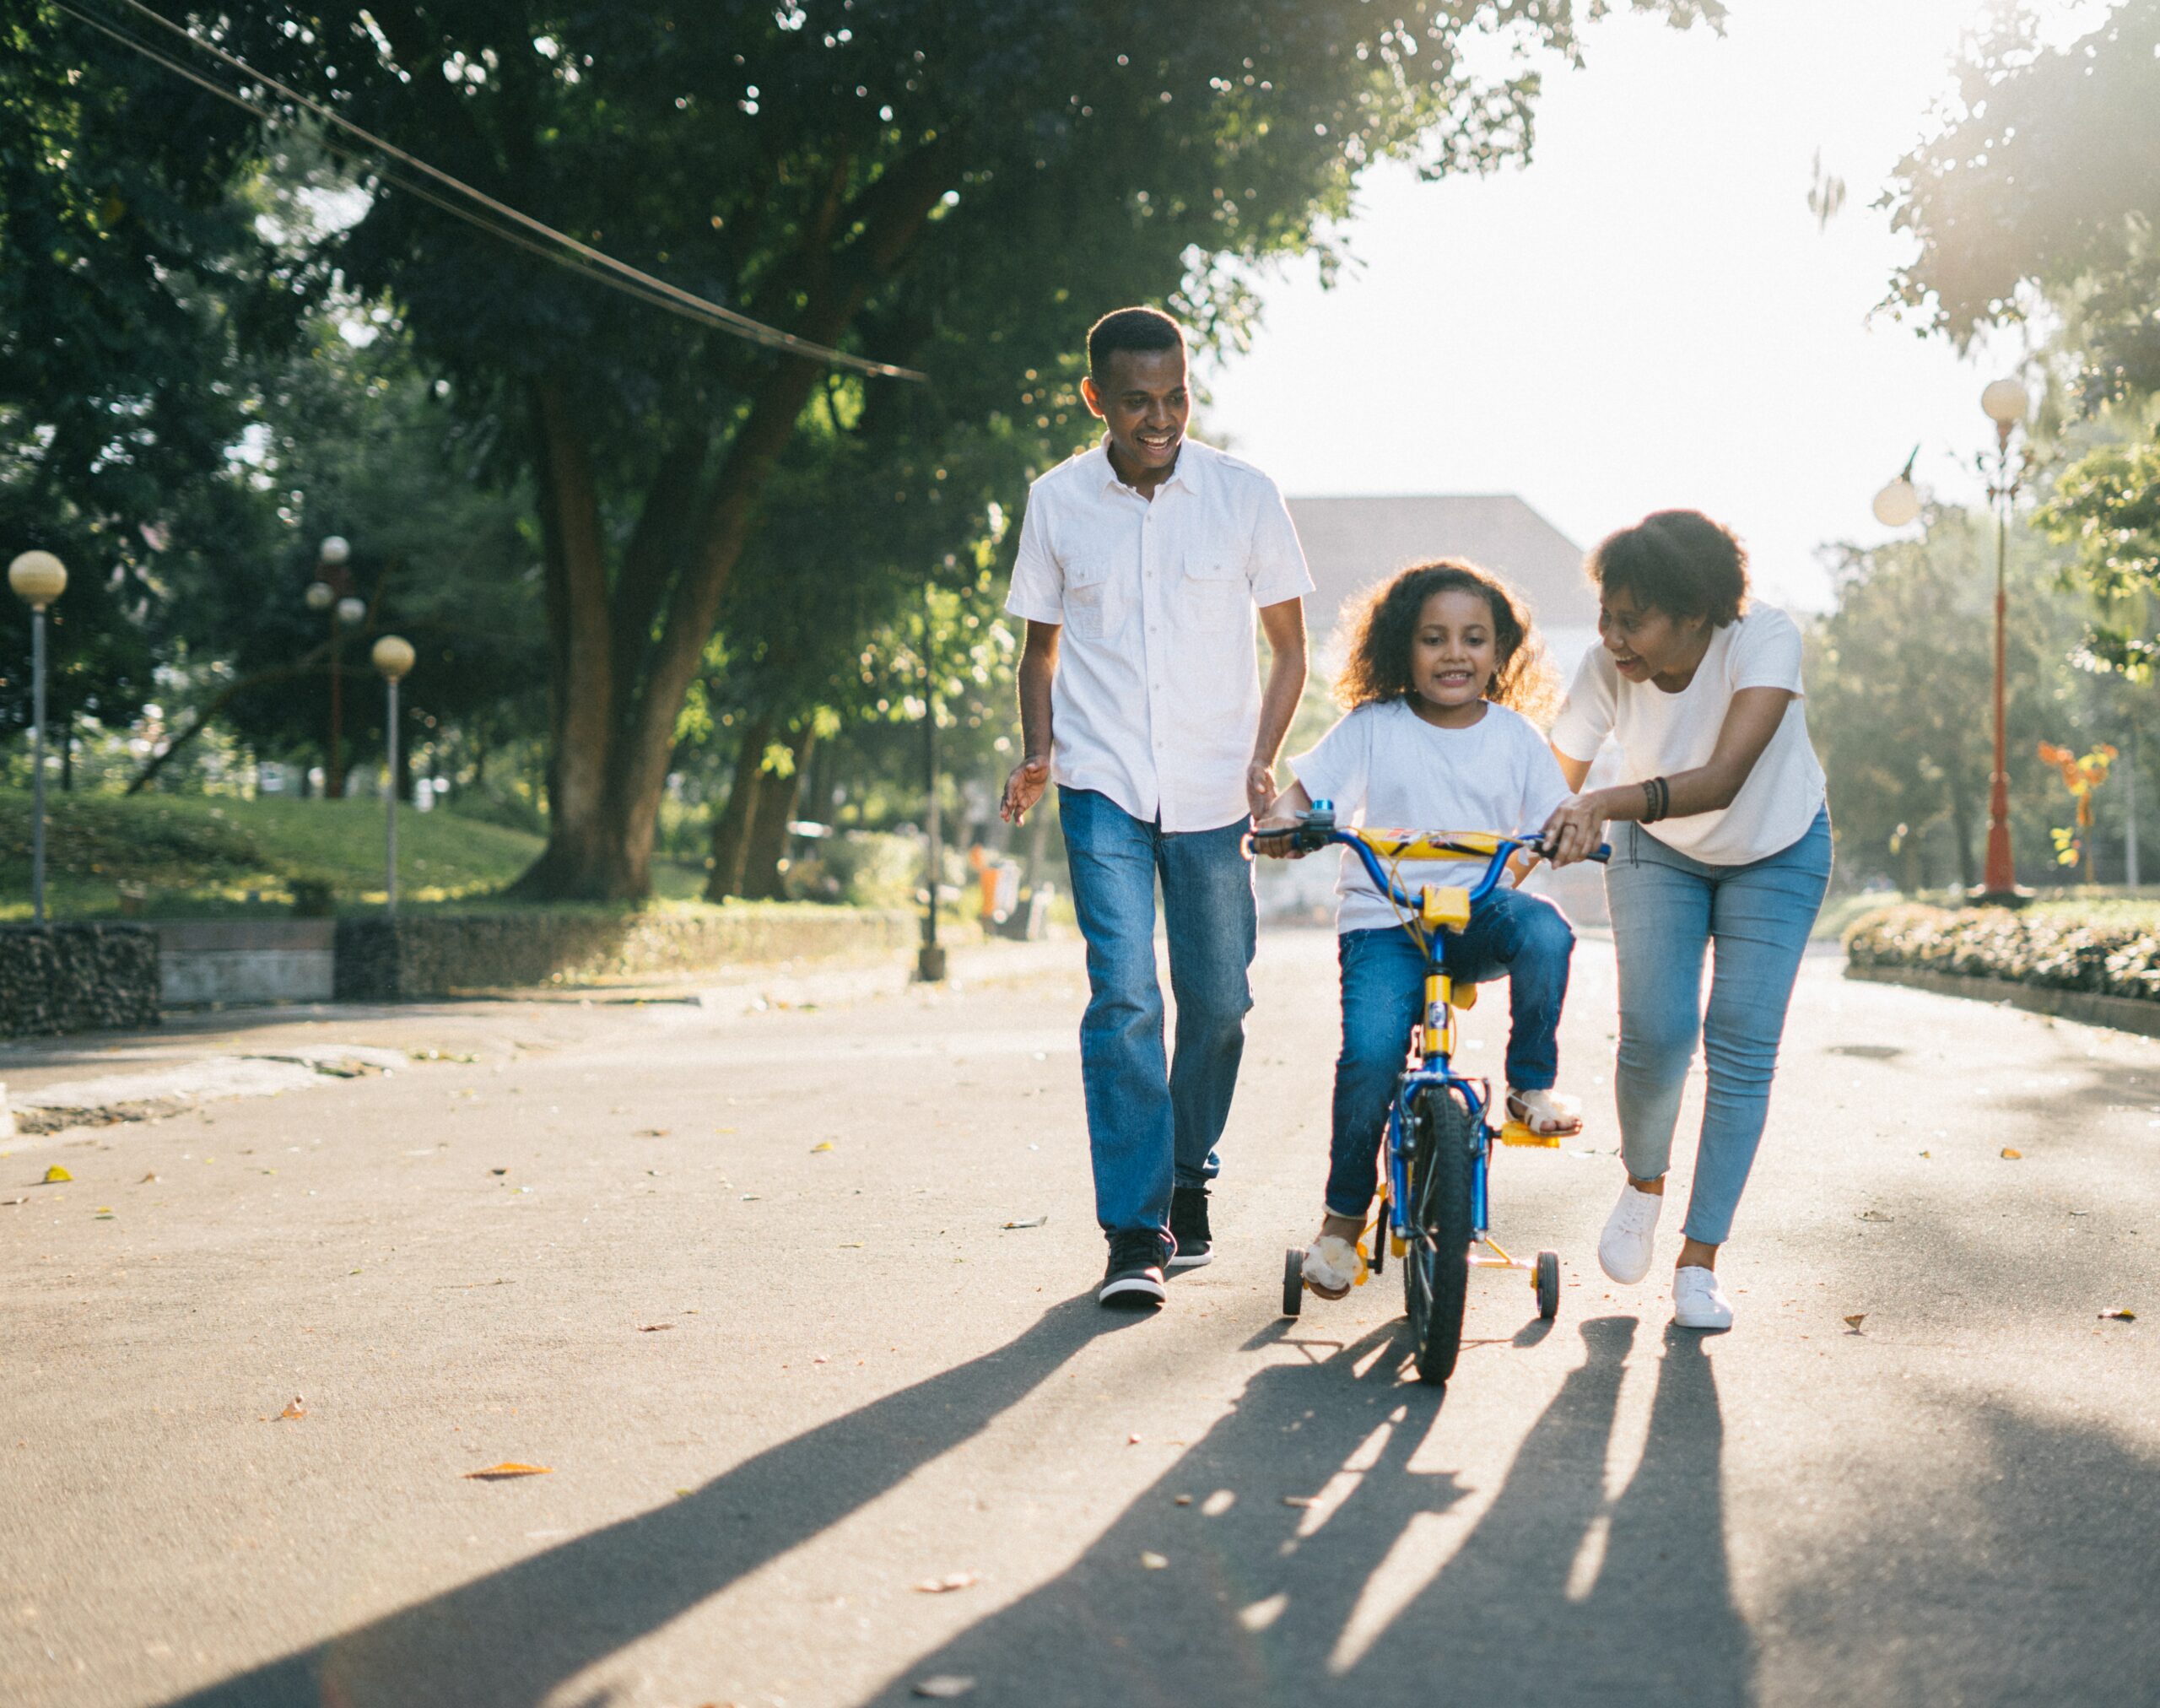 La famille : apprentissage du vélo